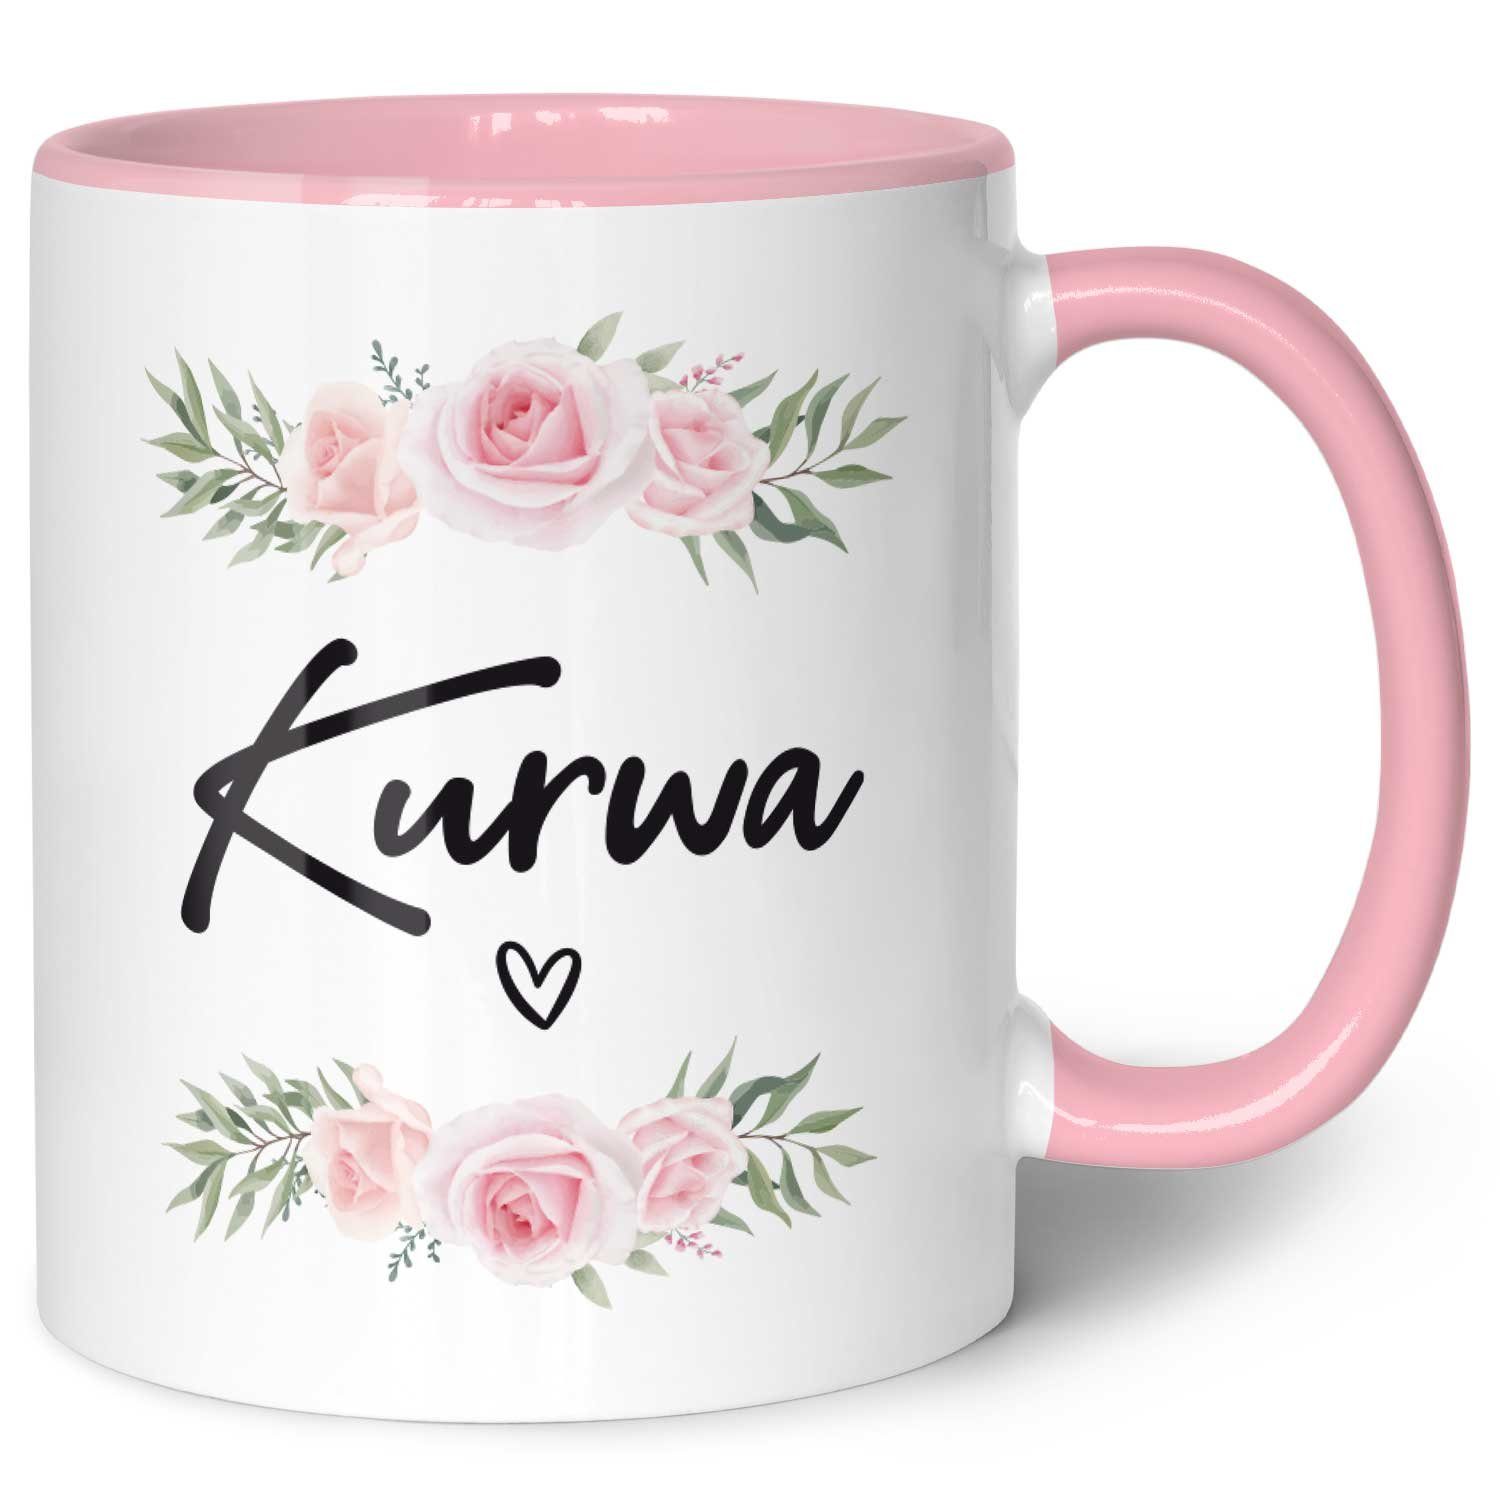 GRAVURZEILE Tasse bedruckt mit Spruch - Kurwa - Lustige Geschenke - Für Freunde, aus Keramik - Spülmaschinenfest, Farbe: Rosa